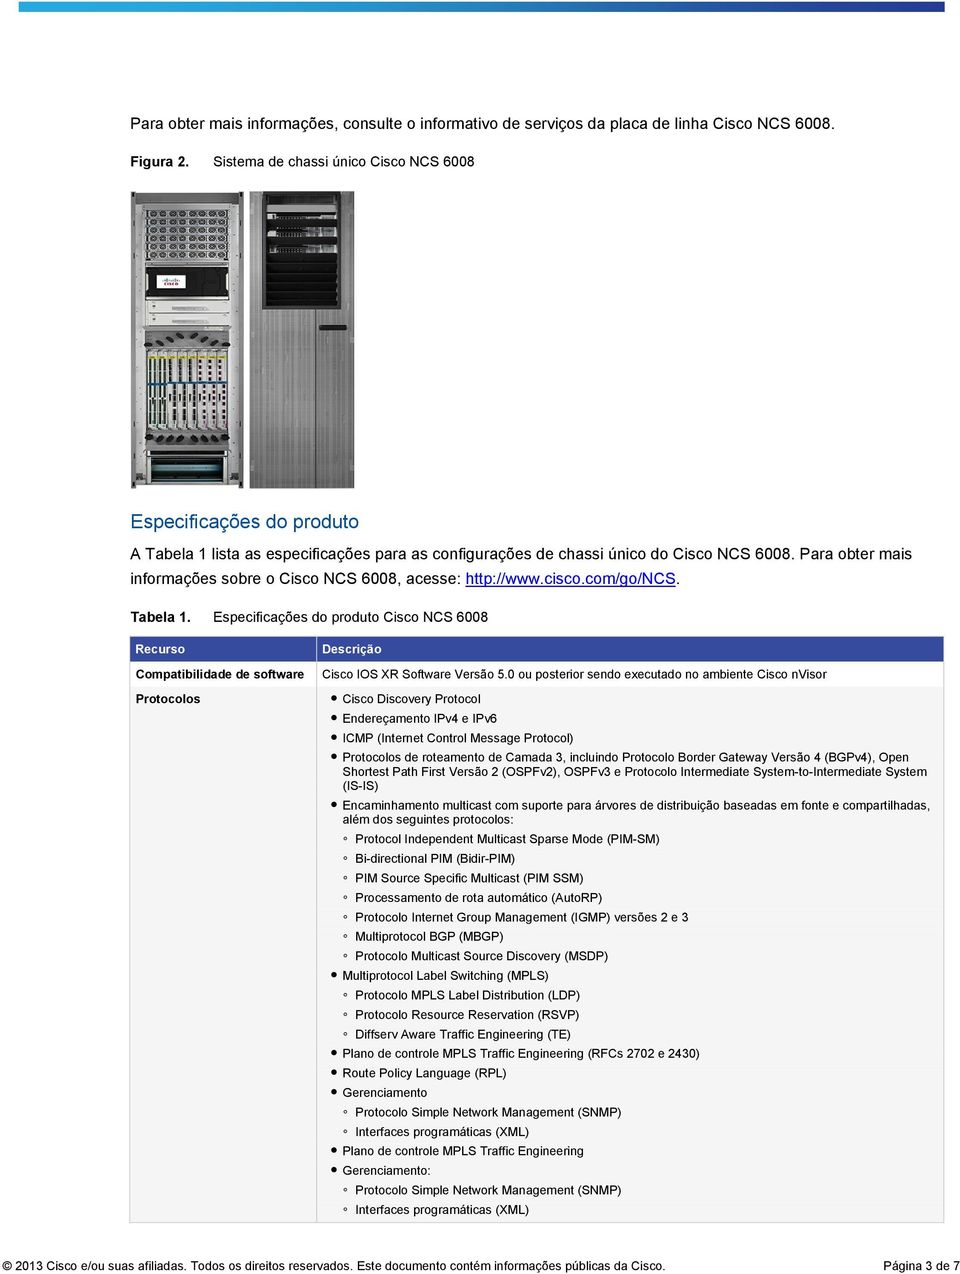 Para obter mais informações sobre o Cisco NCS 6008, acesse: http://www.cisco.com/go/ncs. Tabela 1.